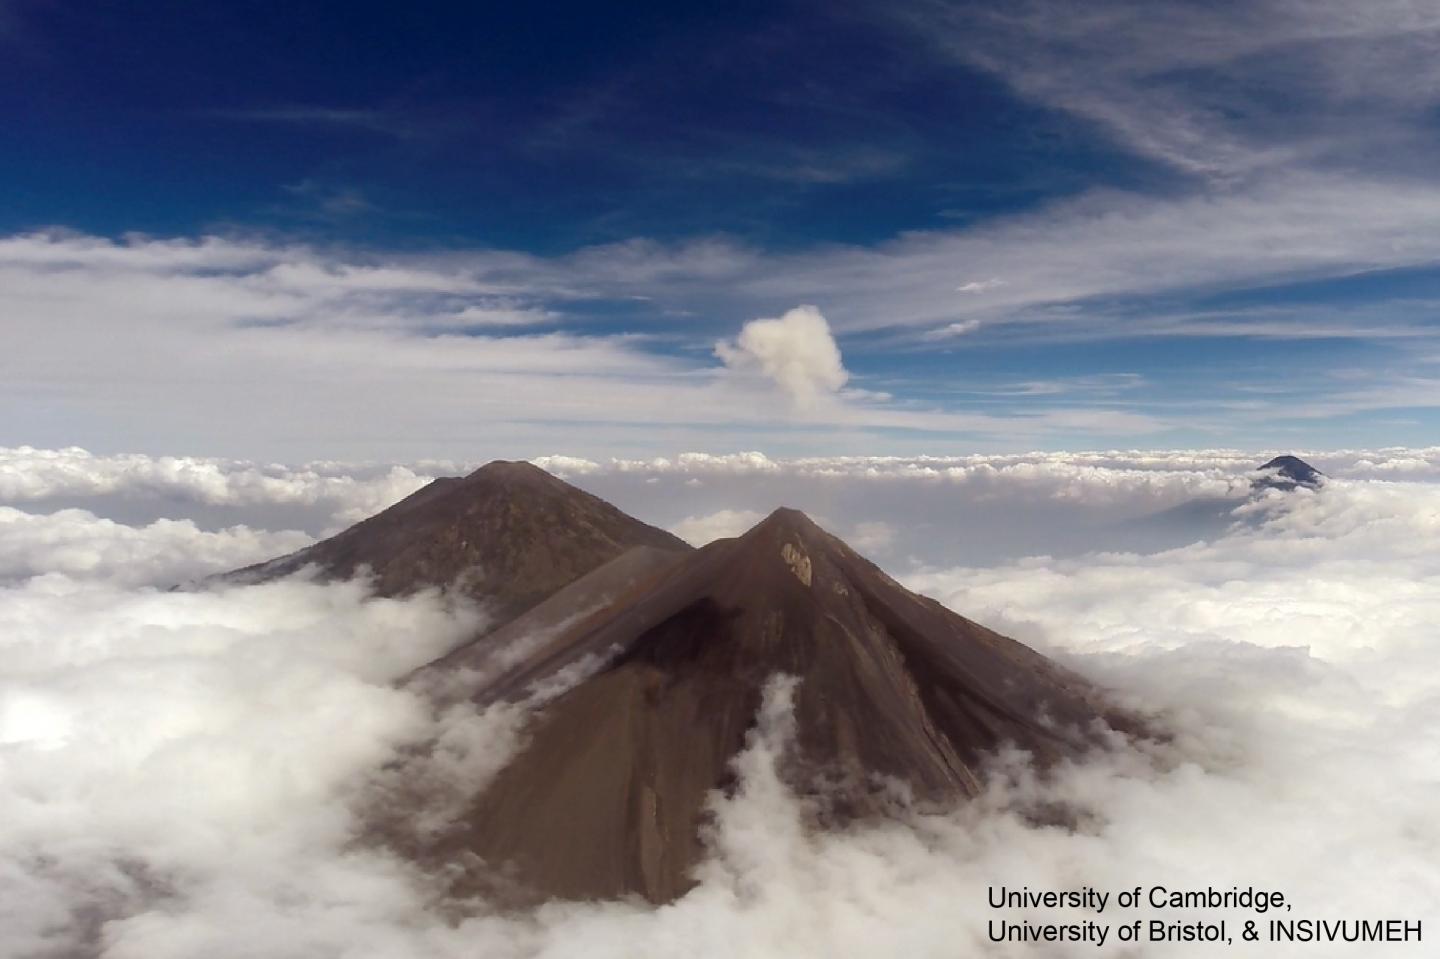 Volcán de Fuego, Volcán de Acatenango, and Volcán de Agua